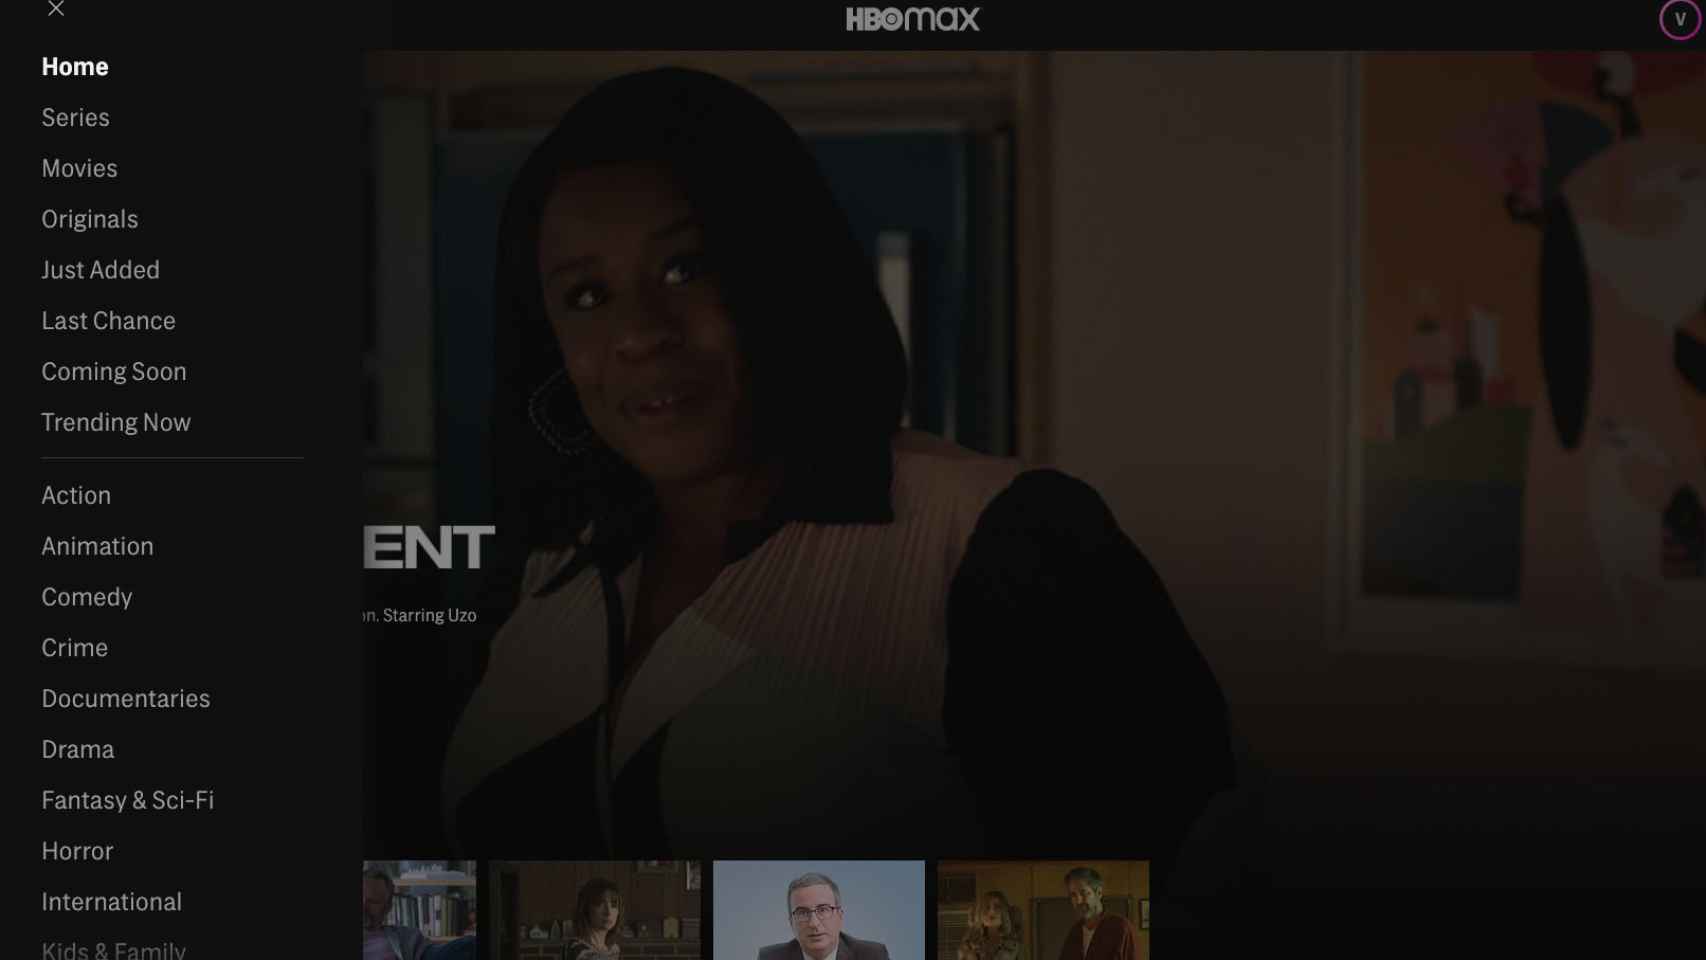 Captura de la aplicación HBO Max en iOs.